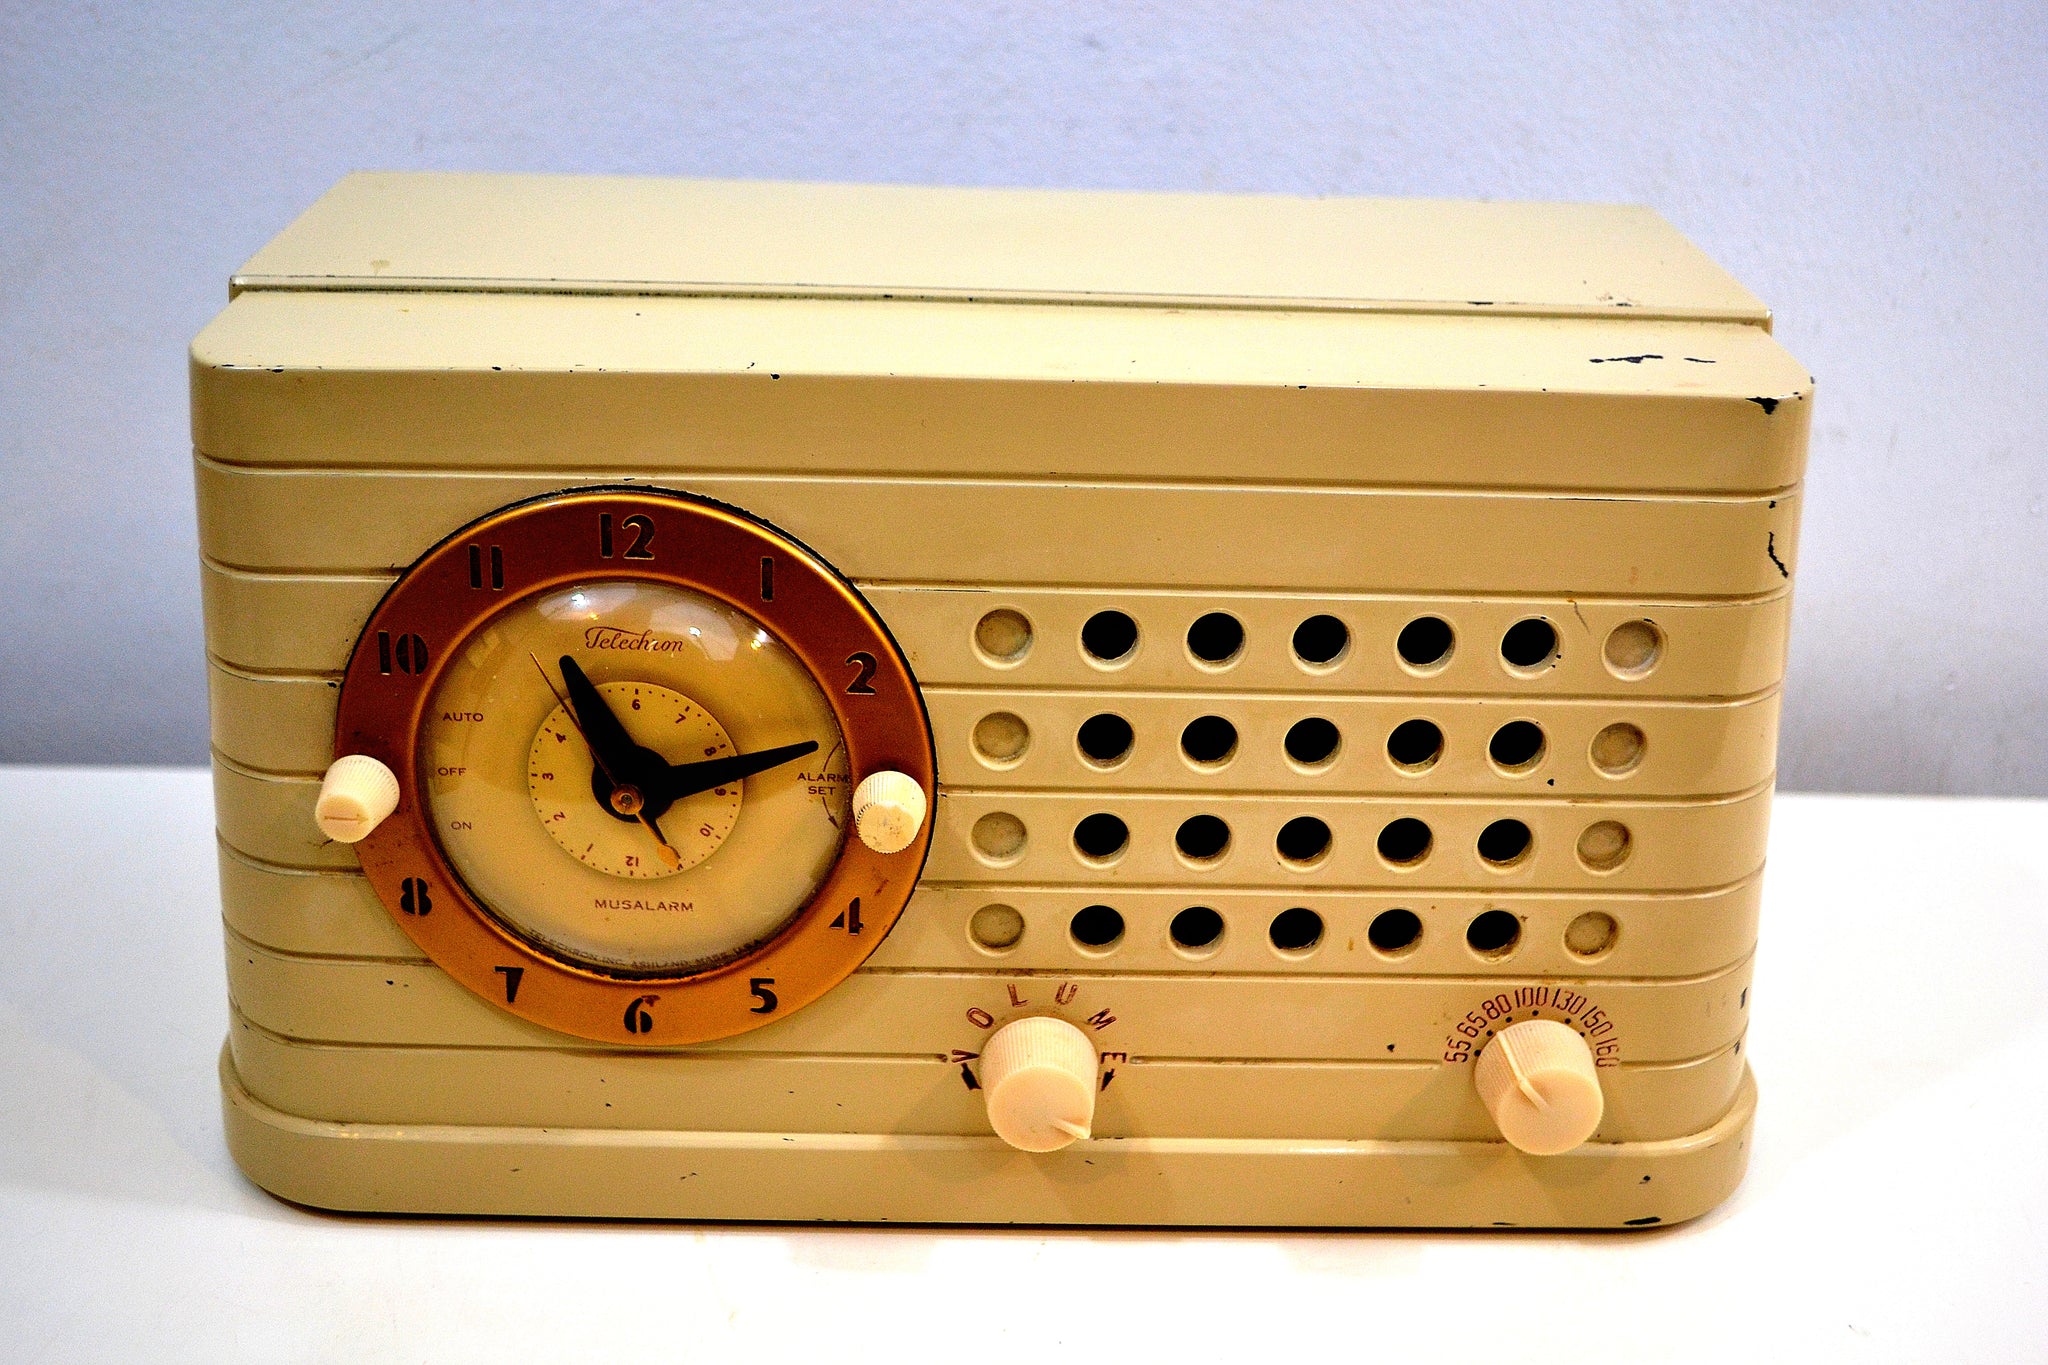 Antique Radialva Alarm Clock Radio, Vintage Art Deco (Works)